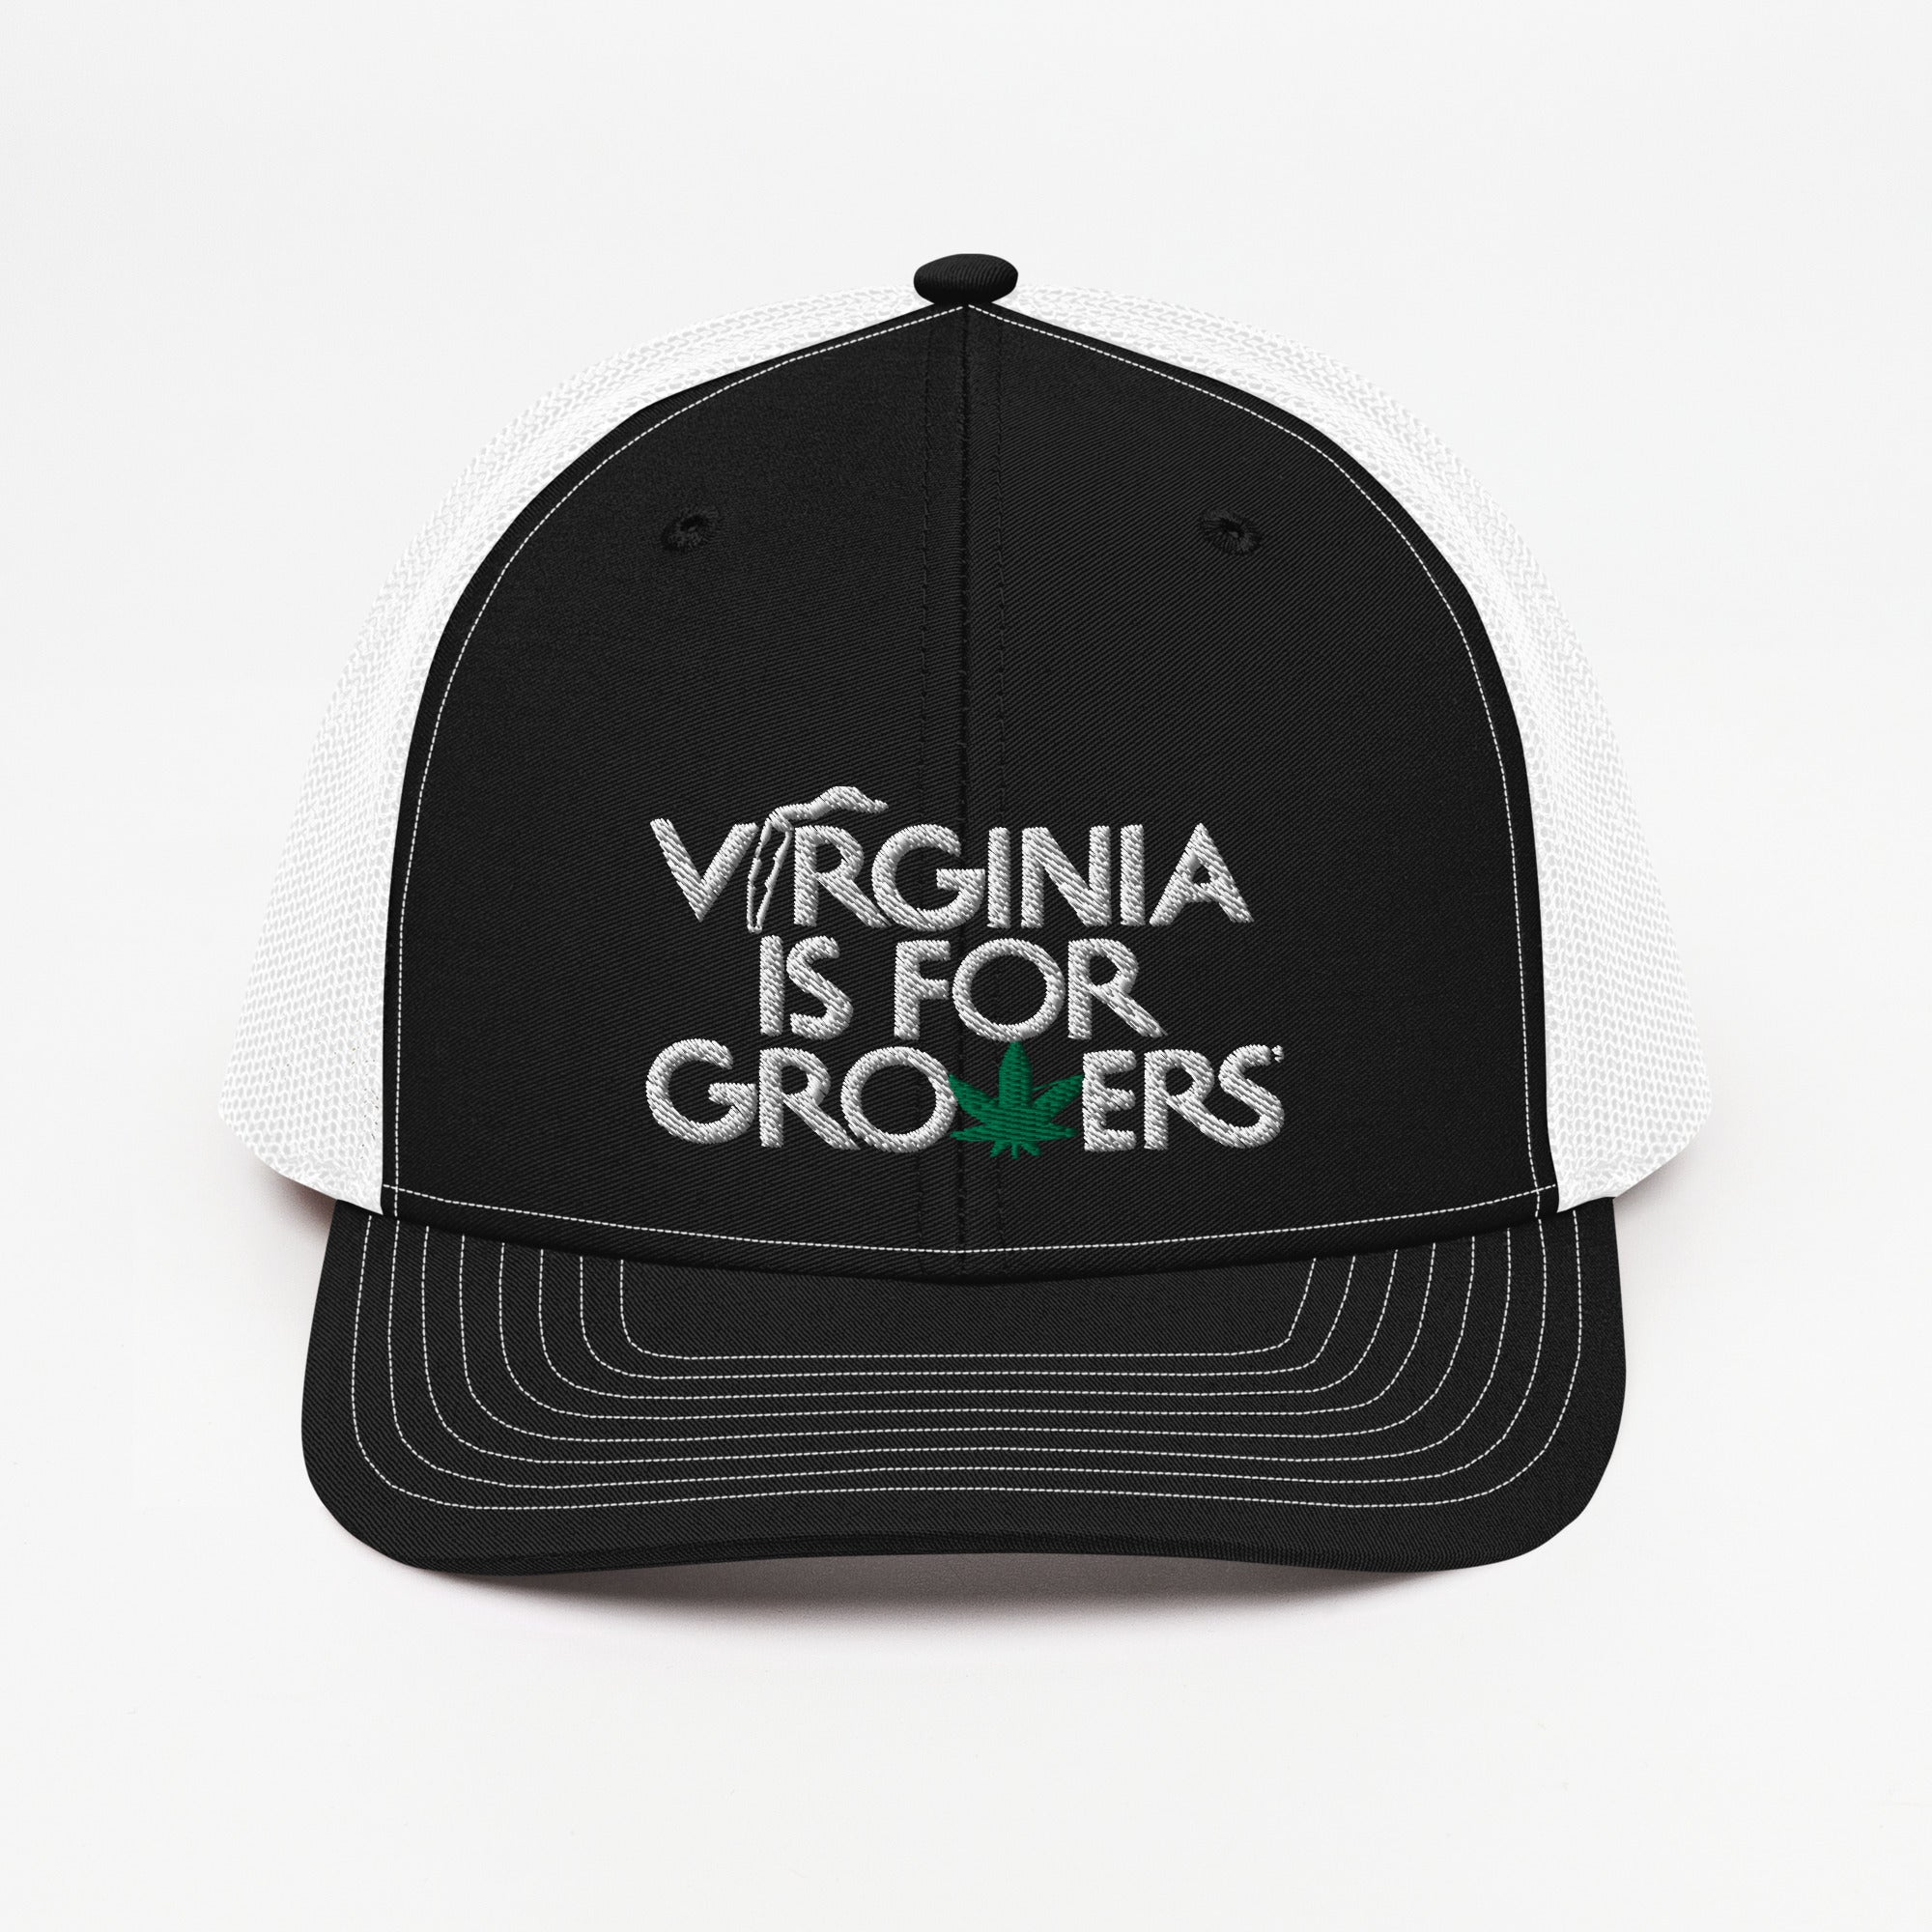 "VA is for Growers" Trucker Cap